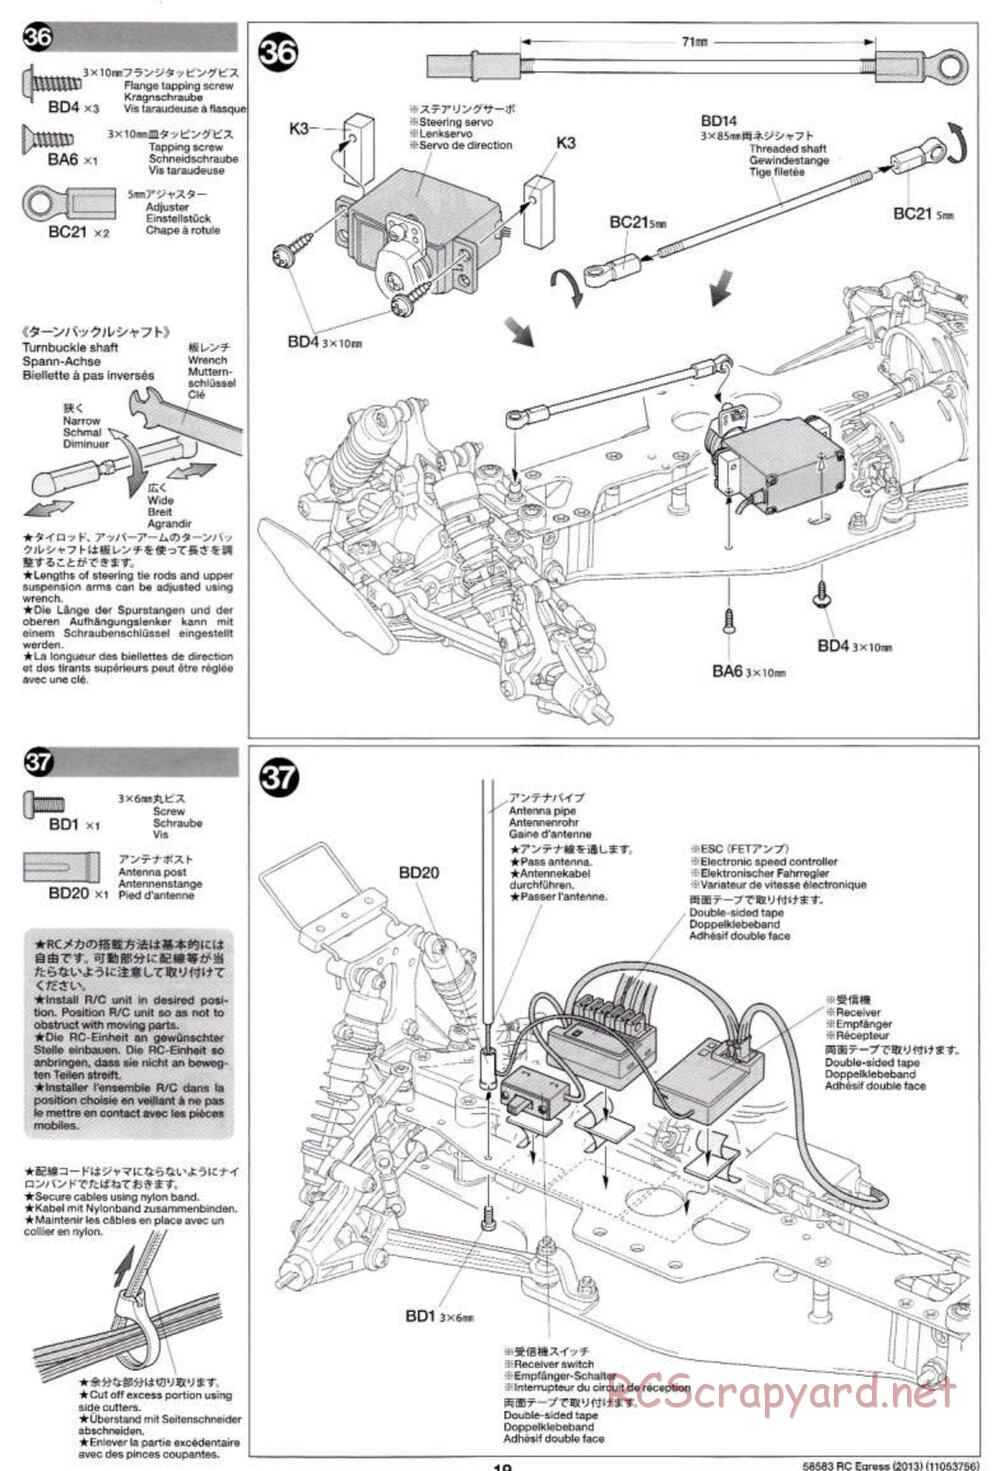 Tamiya - Egress 2013 - AV Chassis - Manual - Page 19